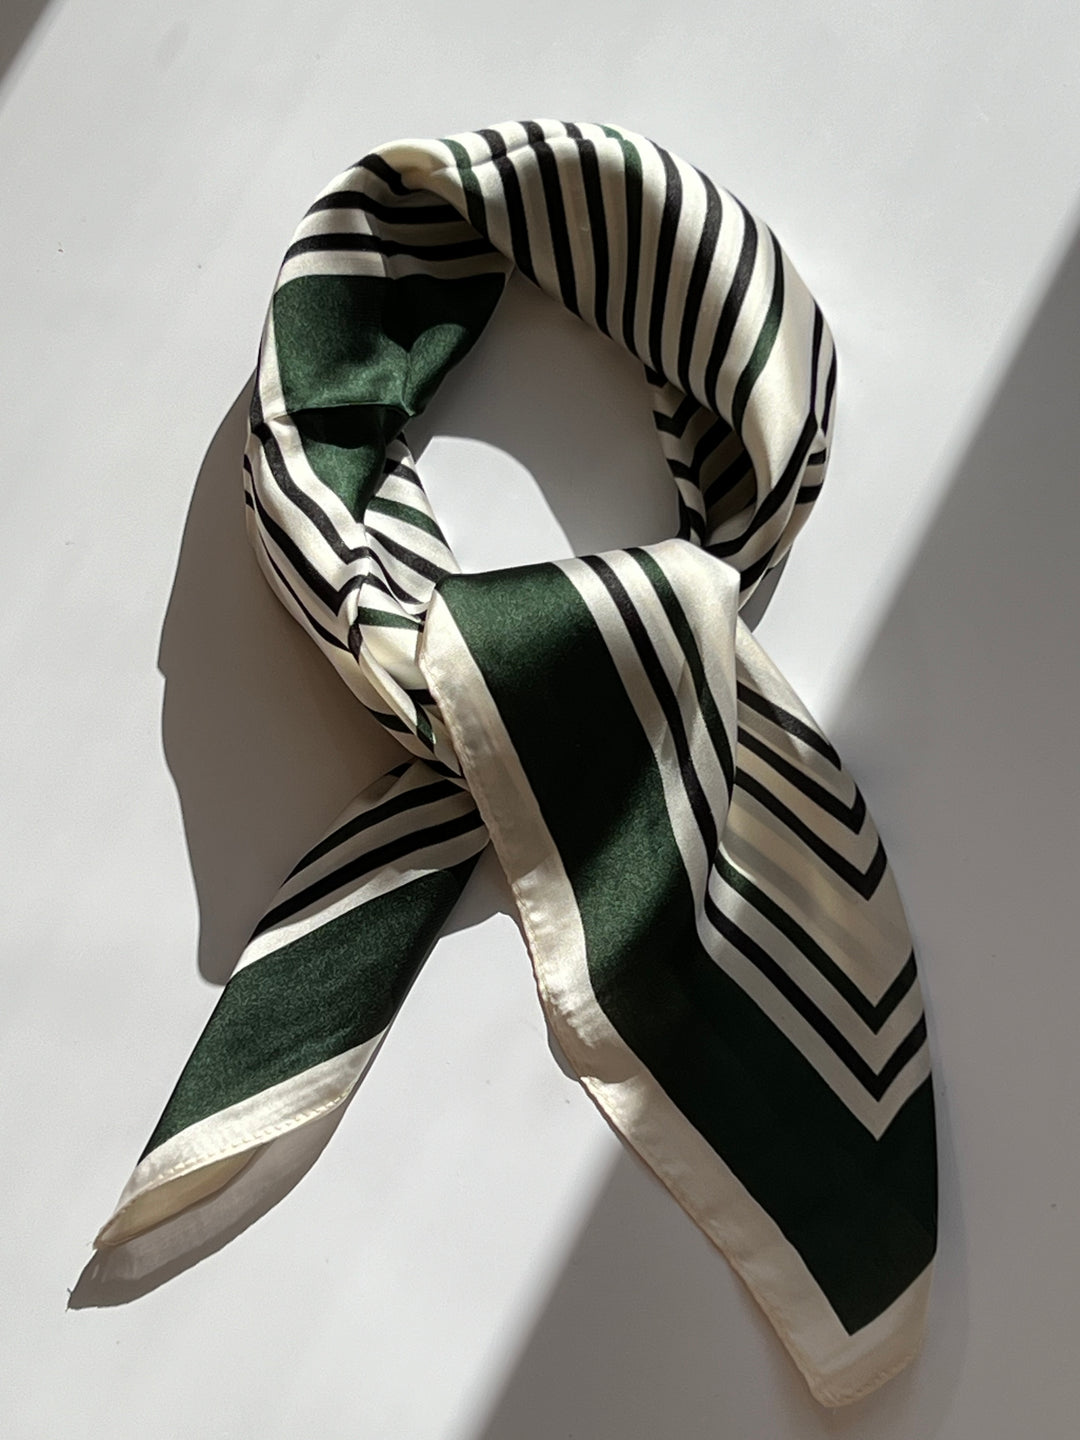 Hvidt Tørklæde med Mørkegrønt og Sort mønster | 70 x 70 cm Studio Hafnia